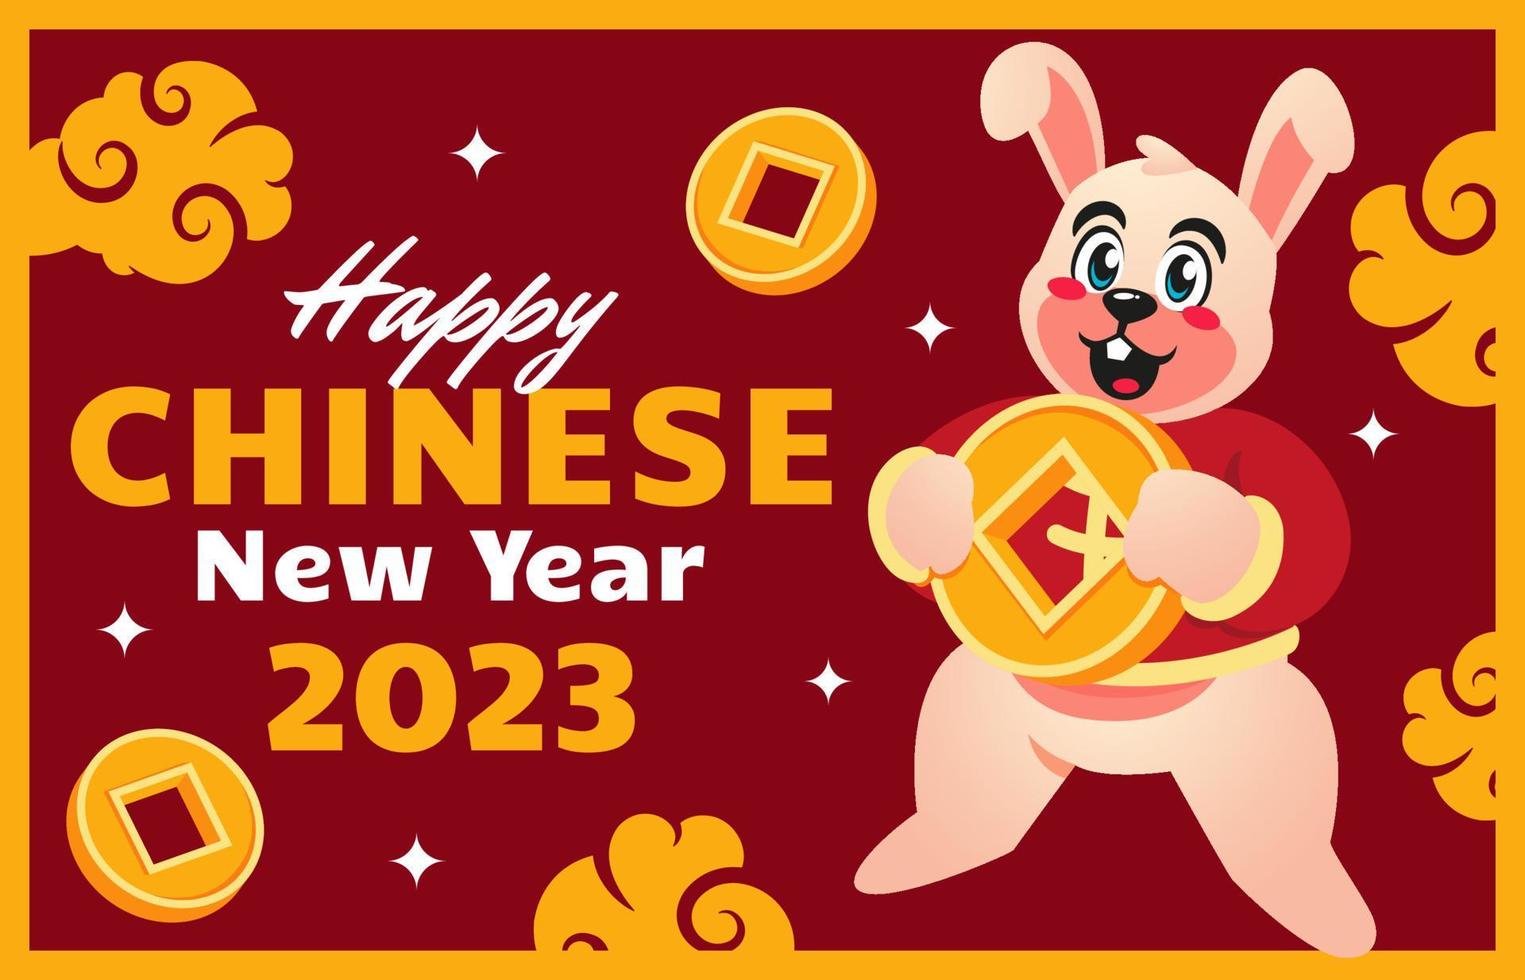 piatto Cinese nuovo anno saluto carte vettore